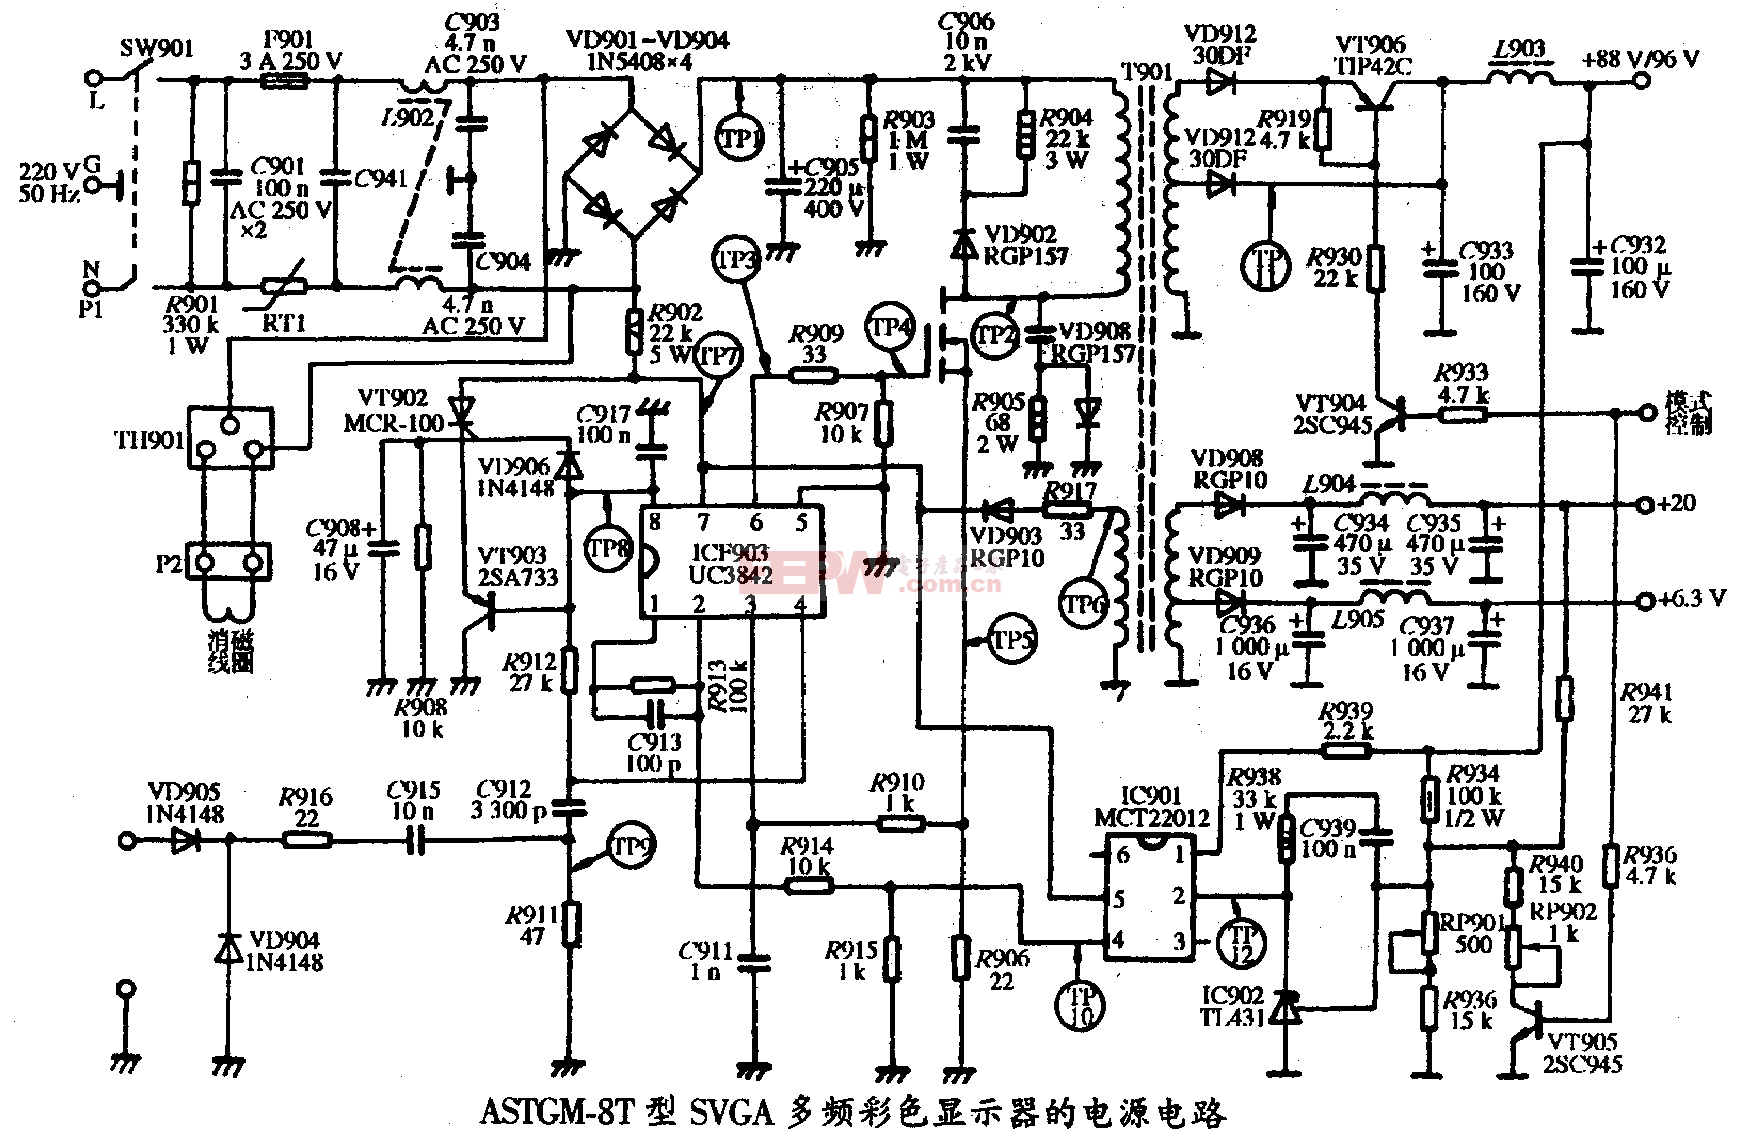 12、AST GM-8T型SVGA彩色顯示器的電源電路圖